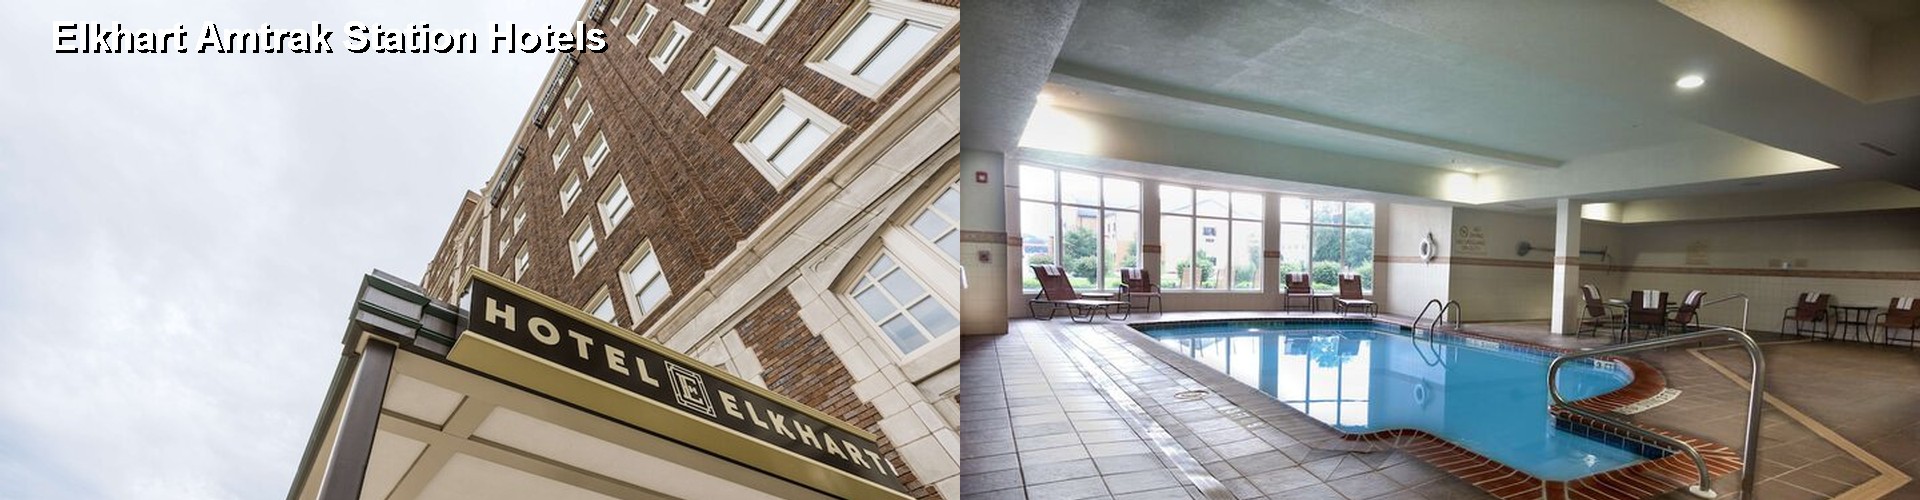 3 Best Hotels near Elkhart Amtrak Station